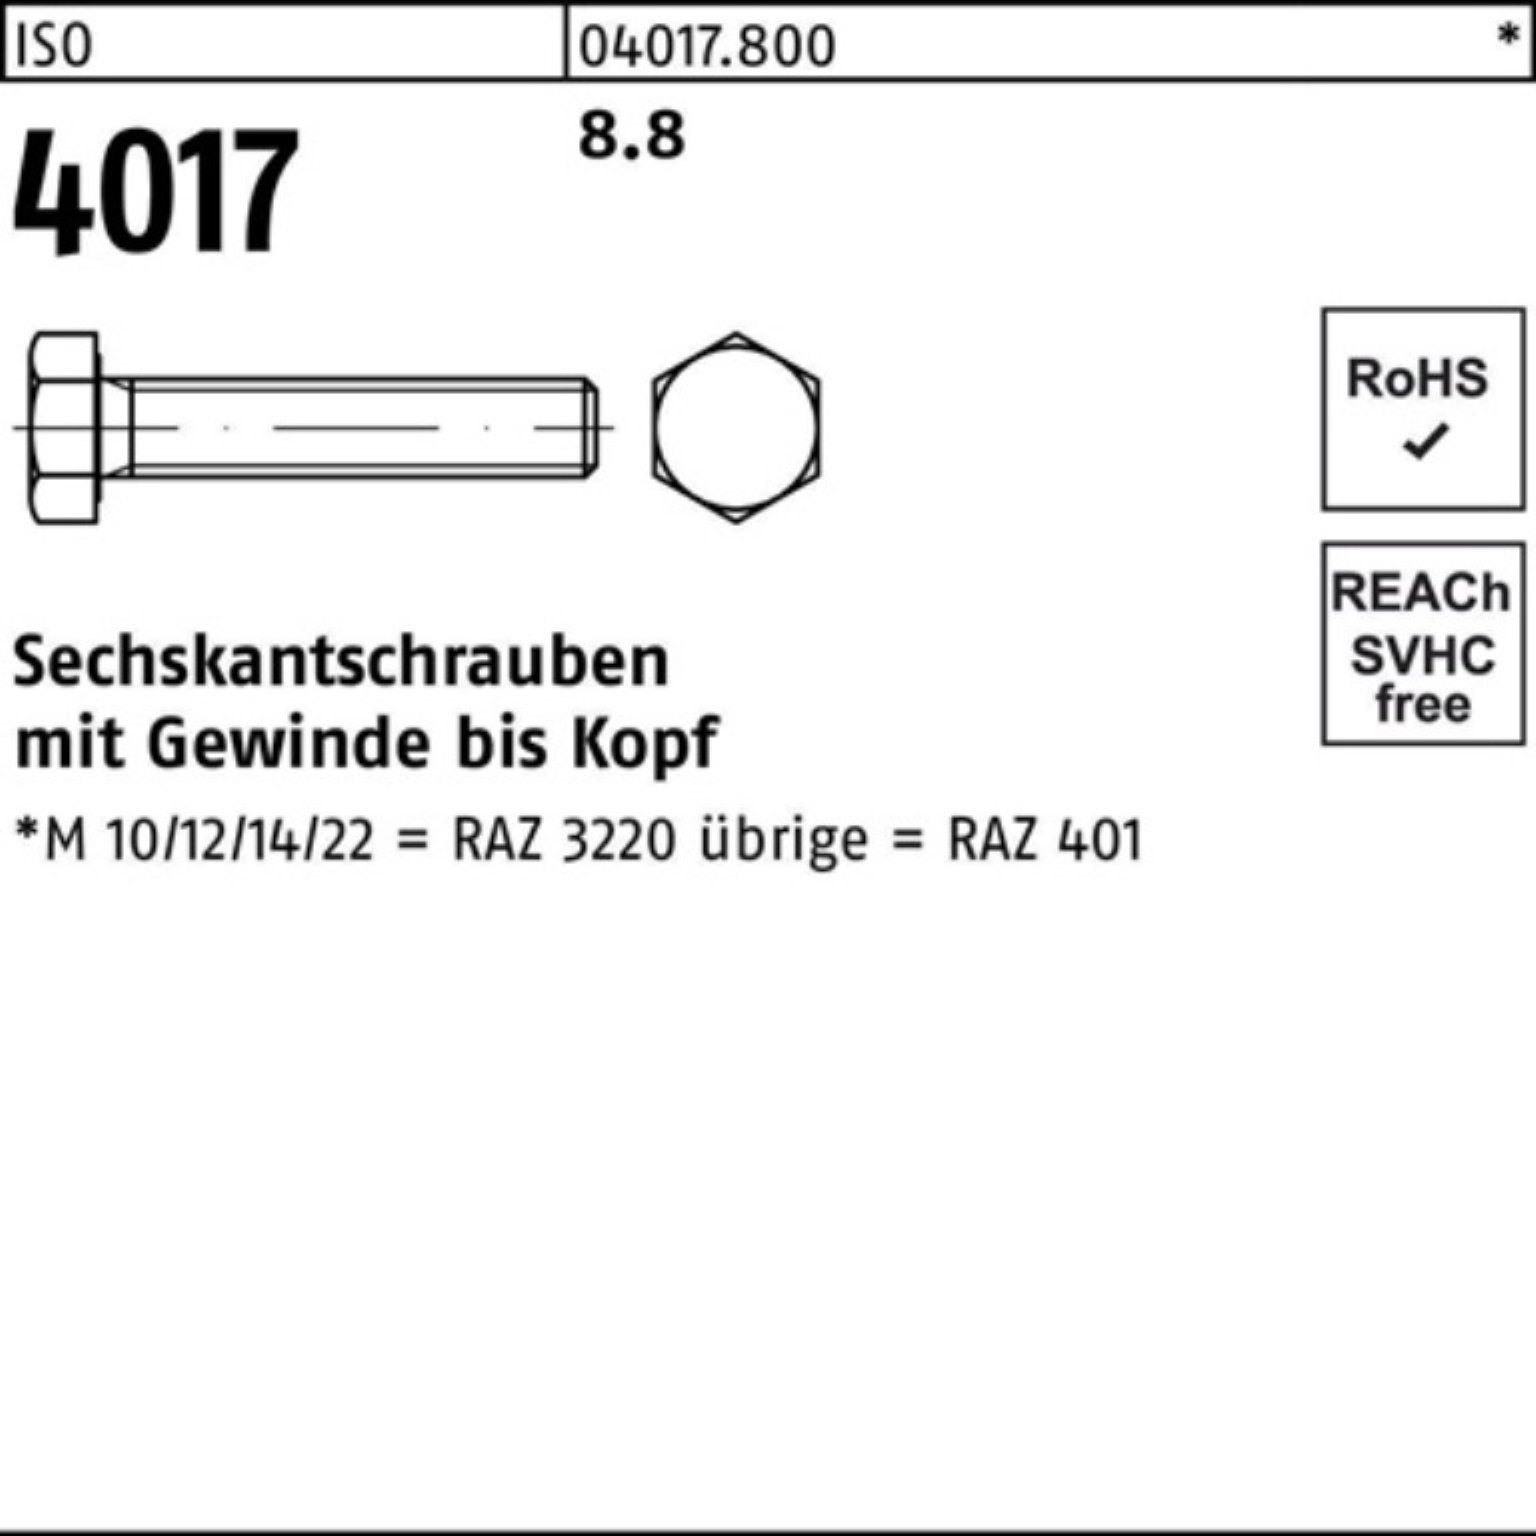 Bufab Sechskantschraube 200er Pack Sechskantschraube 200 VG M8x Stück 55 401 4017 ISO 8.8 ISO